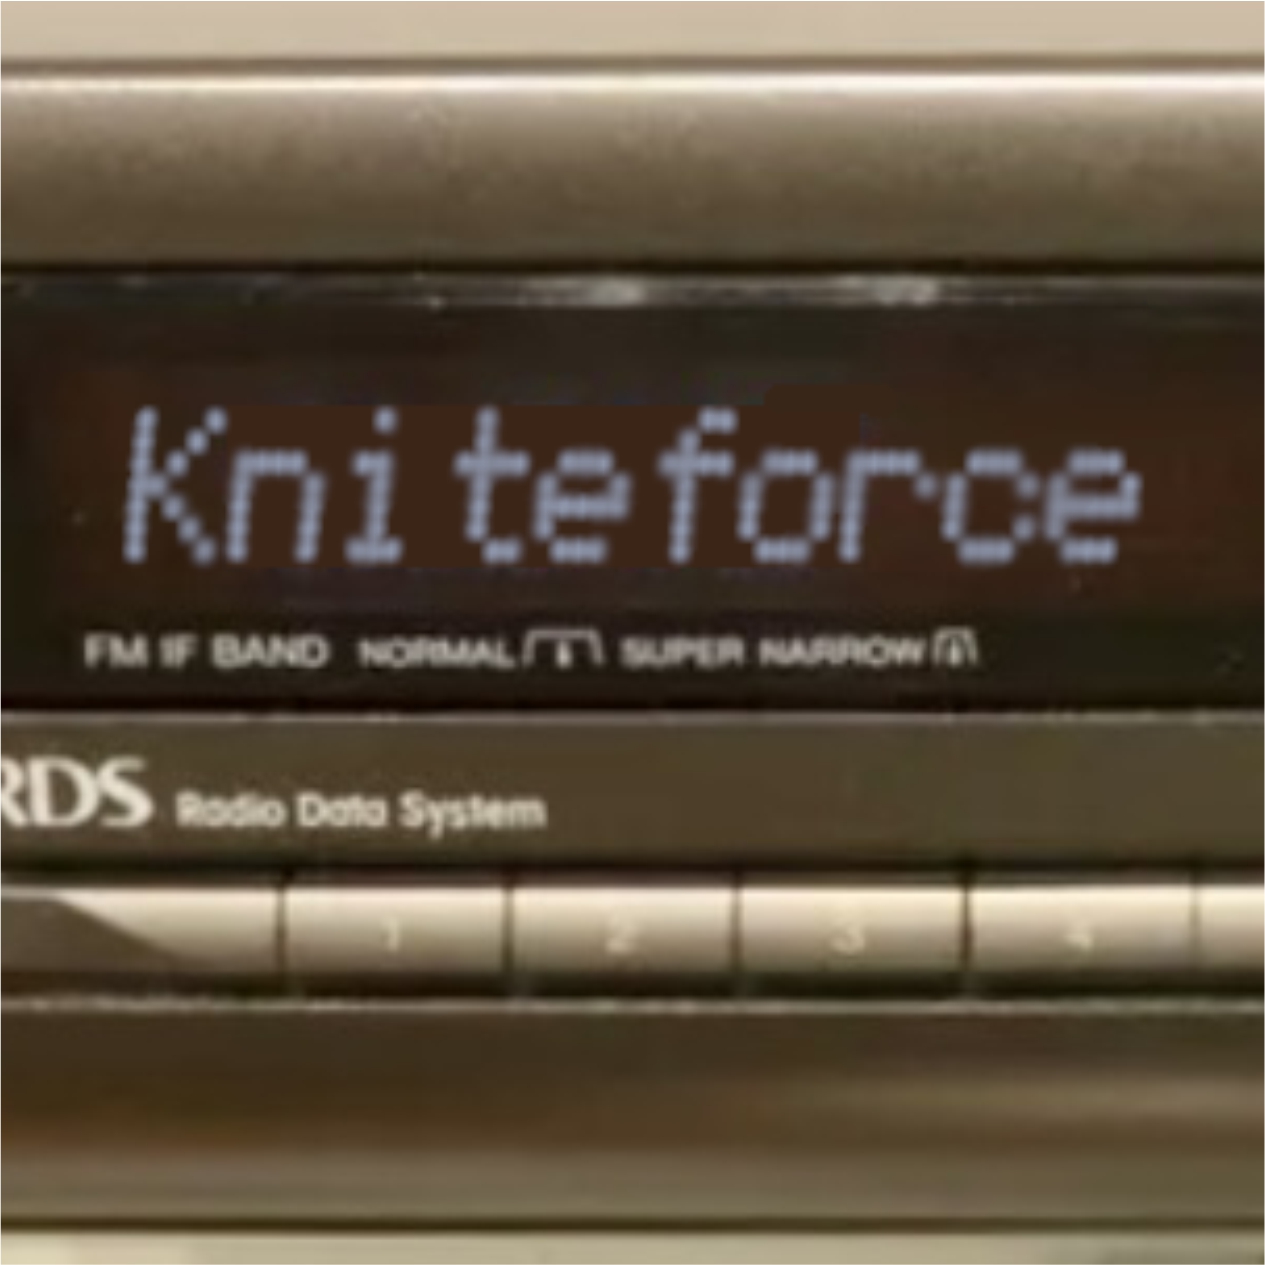 døråbning Hold sammen med håndvask Kniteforce Radio | Home